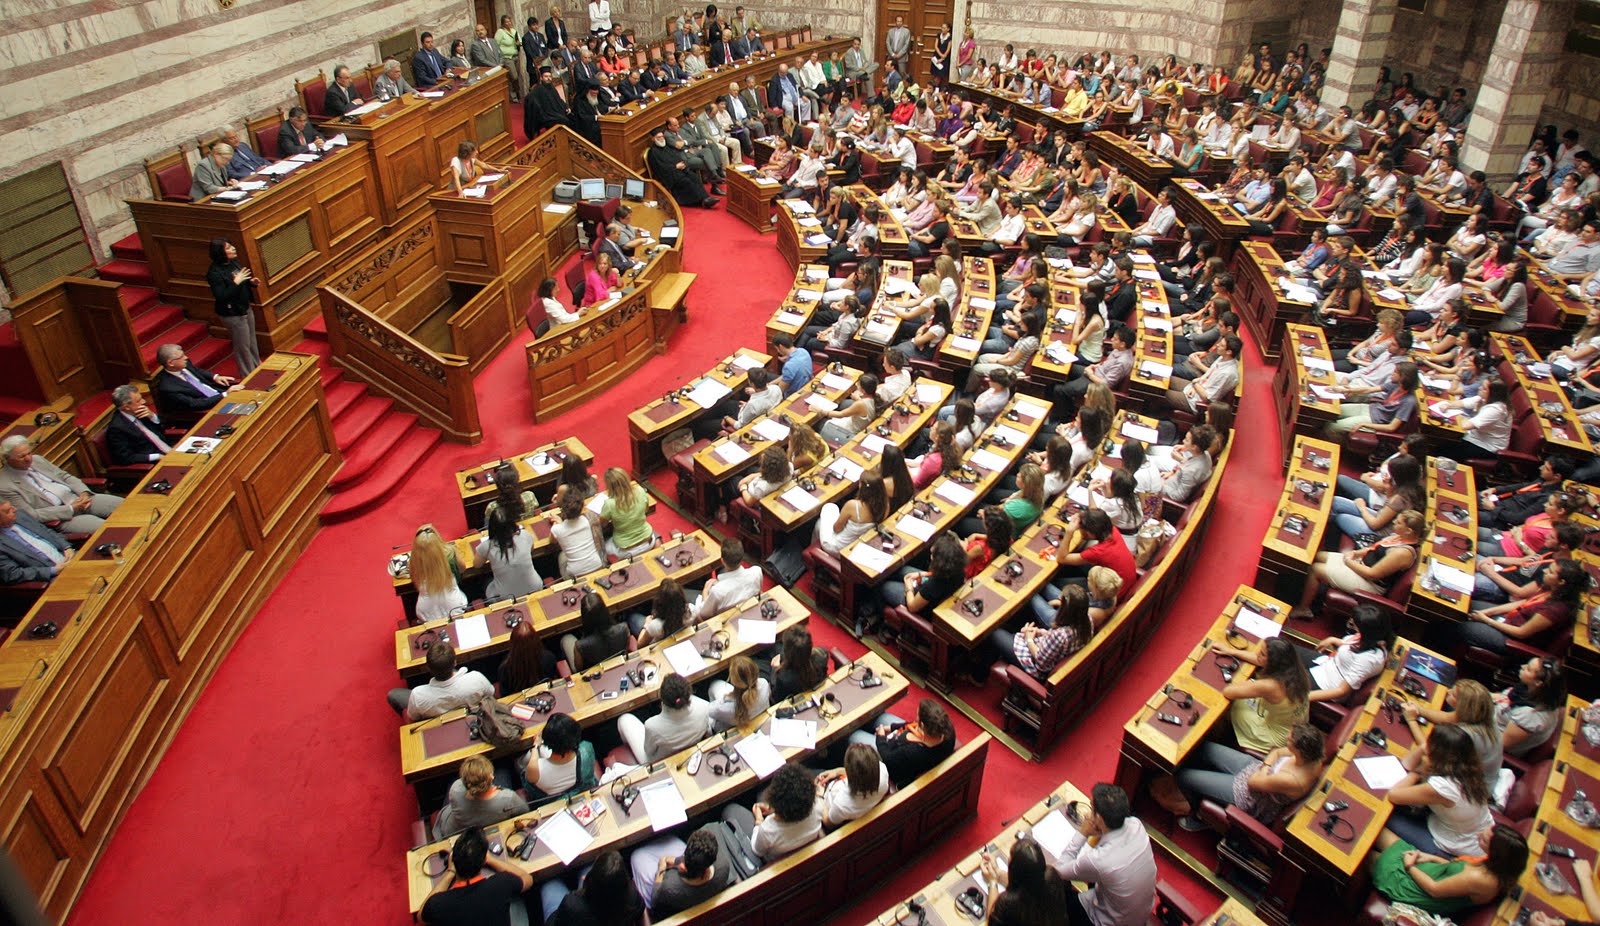 Μειωμένος κατά 2 εκατ. ευρώ ο προϋπολογισμός της Βουλής για το 2015